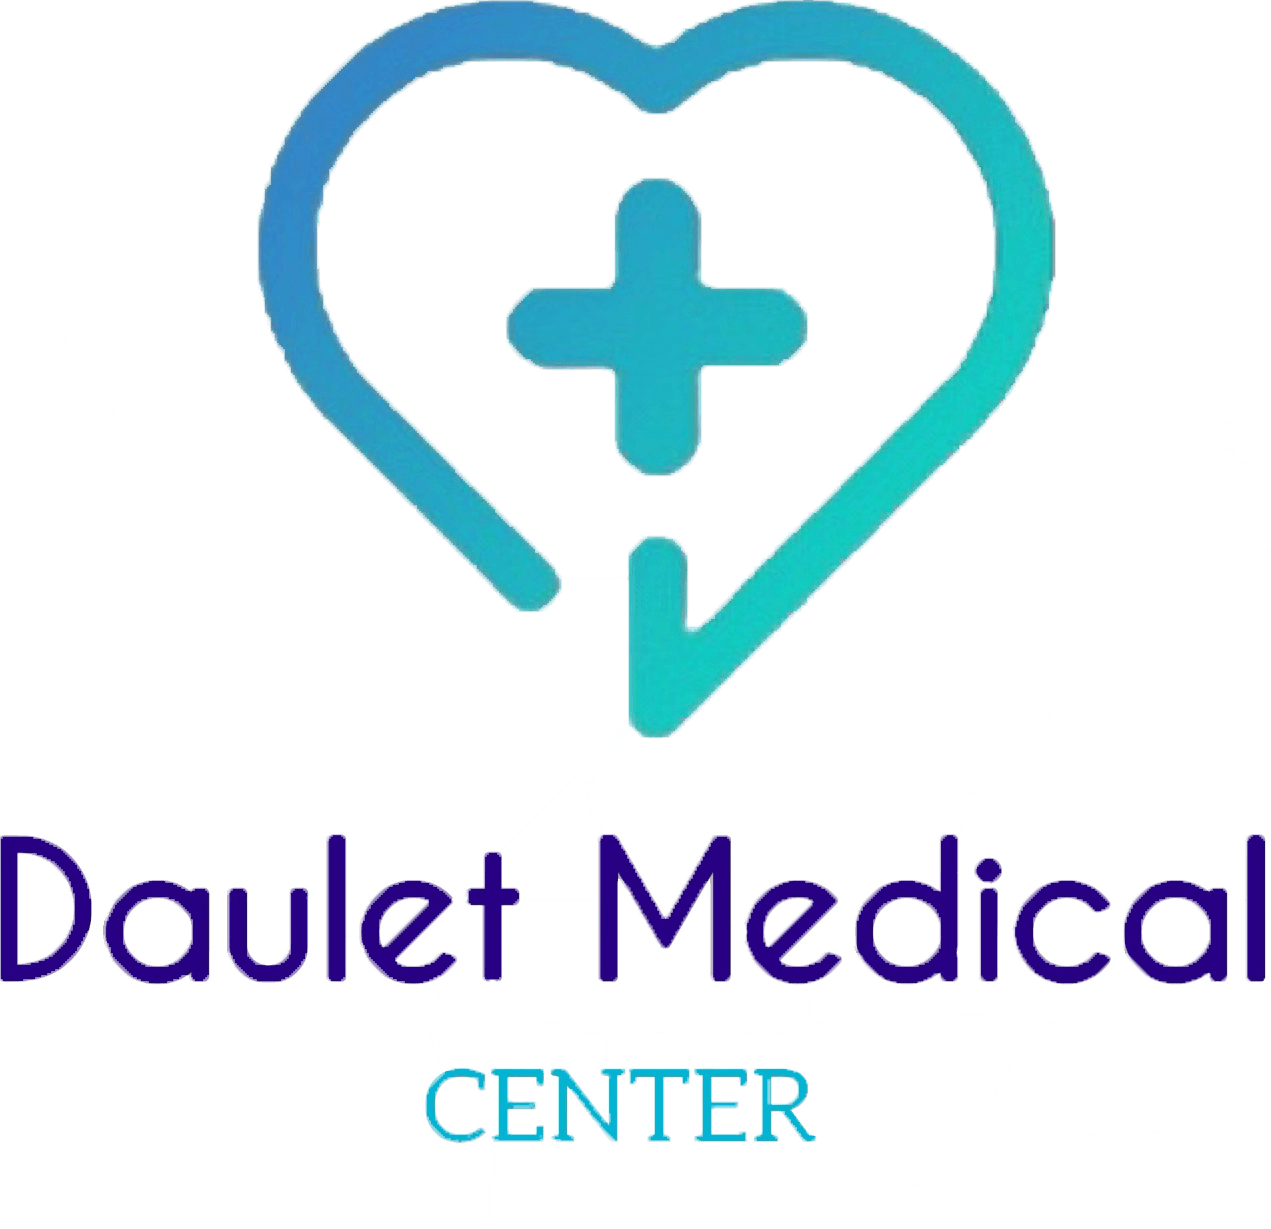 "DAULET MEDICAL CENTER" медицина орталығы